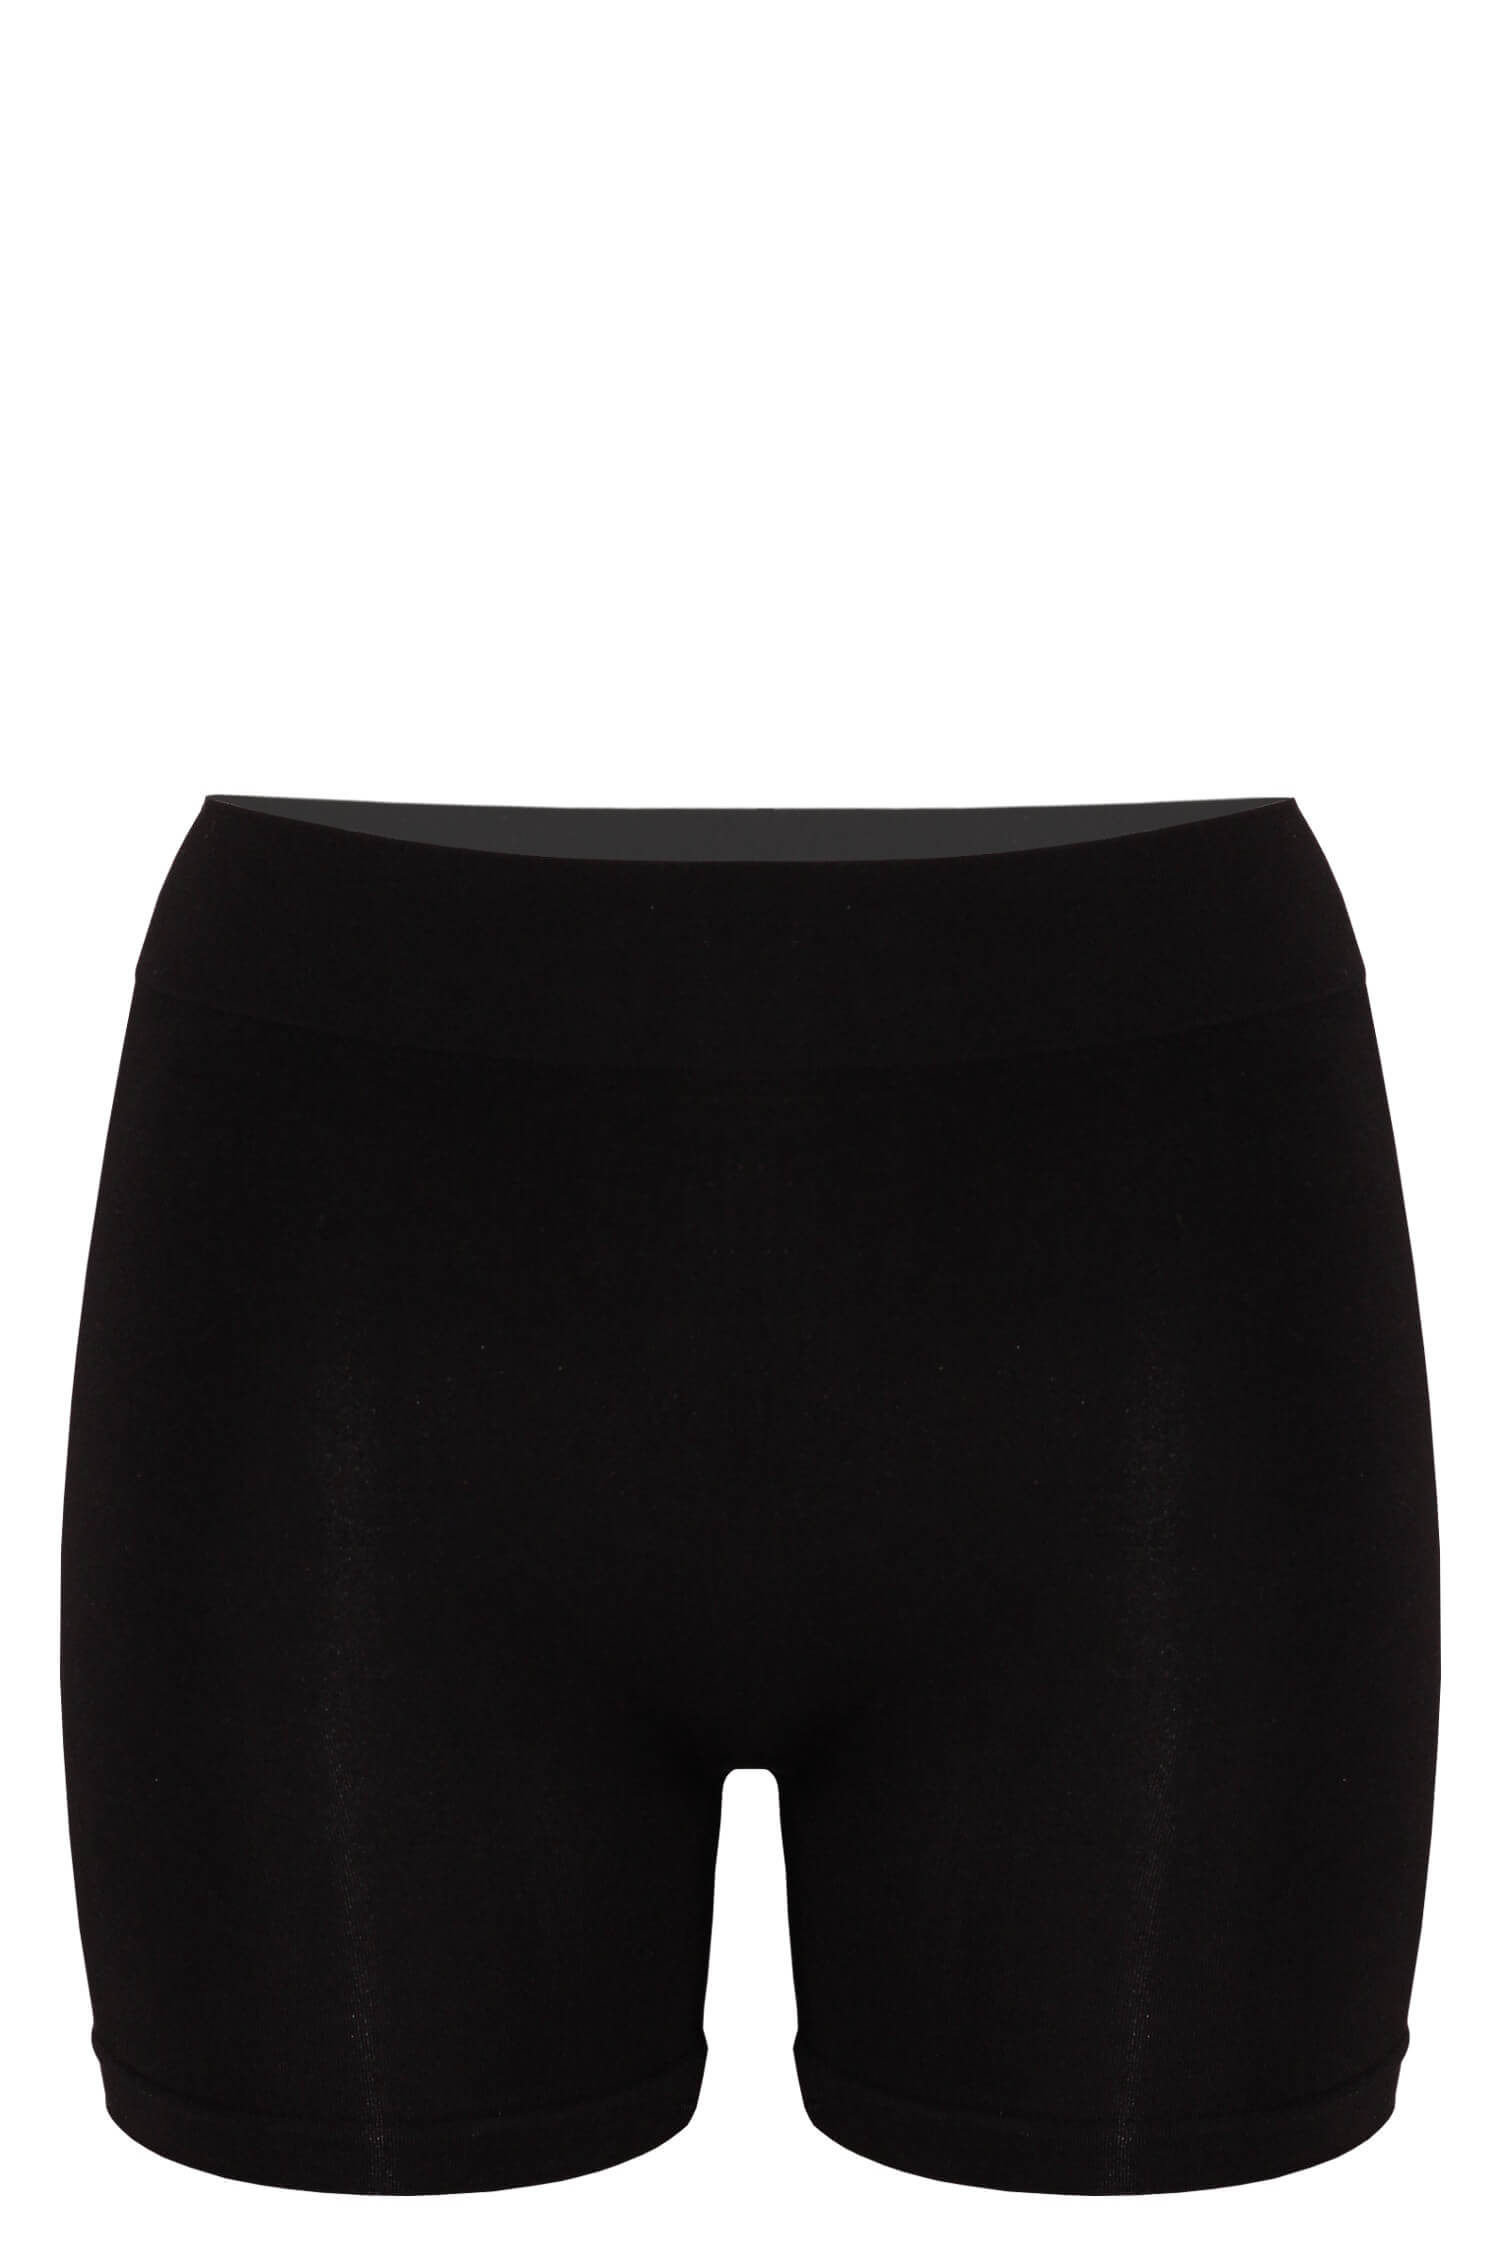 Eva BmBoo kalhotky s nohavičkou dámské Z6103 - 3bal XL černá